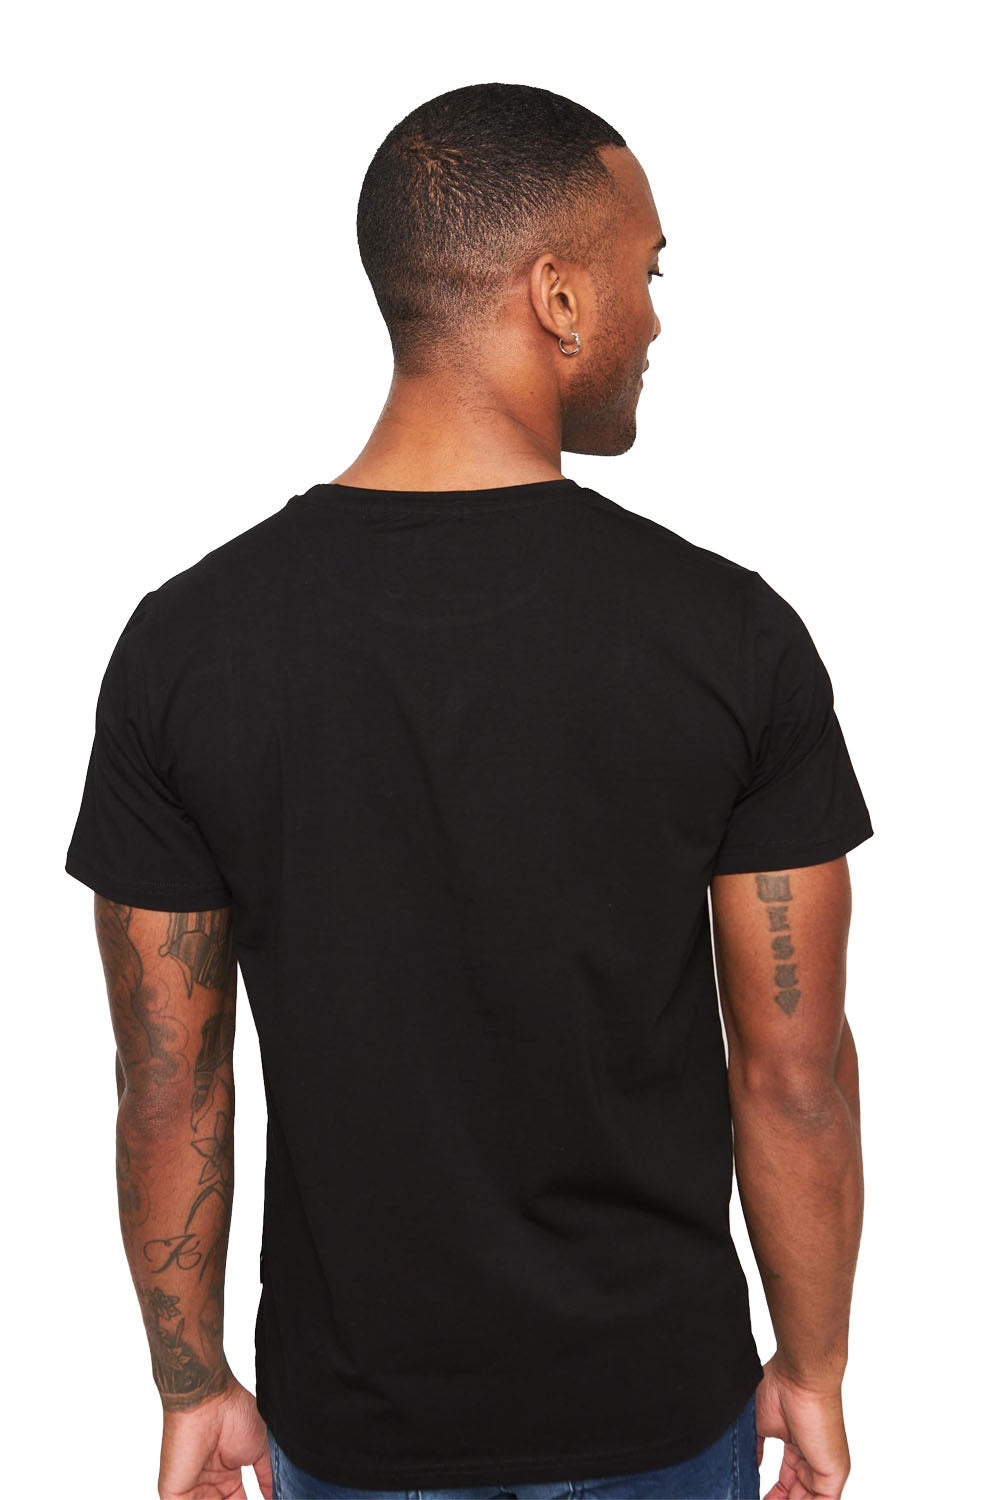 BARABAS Men's Basic Solid Color Crew-neck T-shirts ST933 black